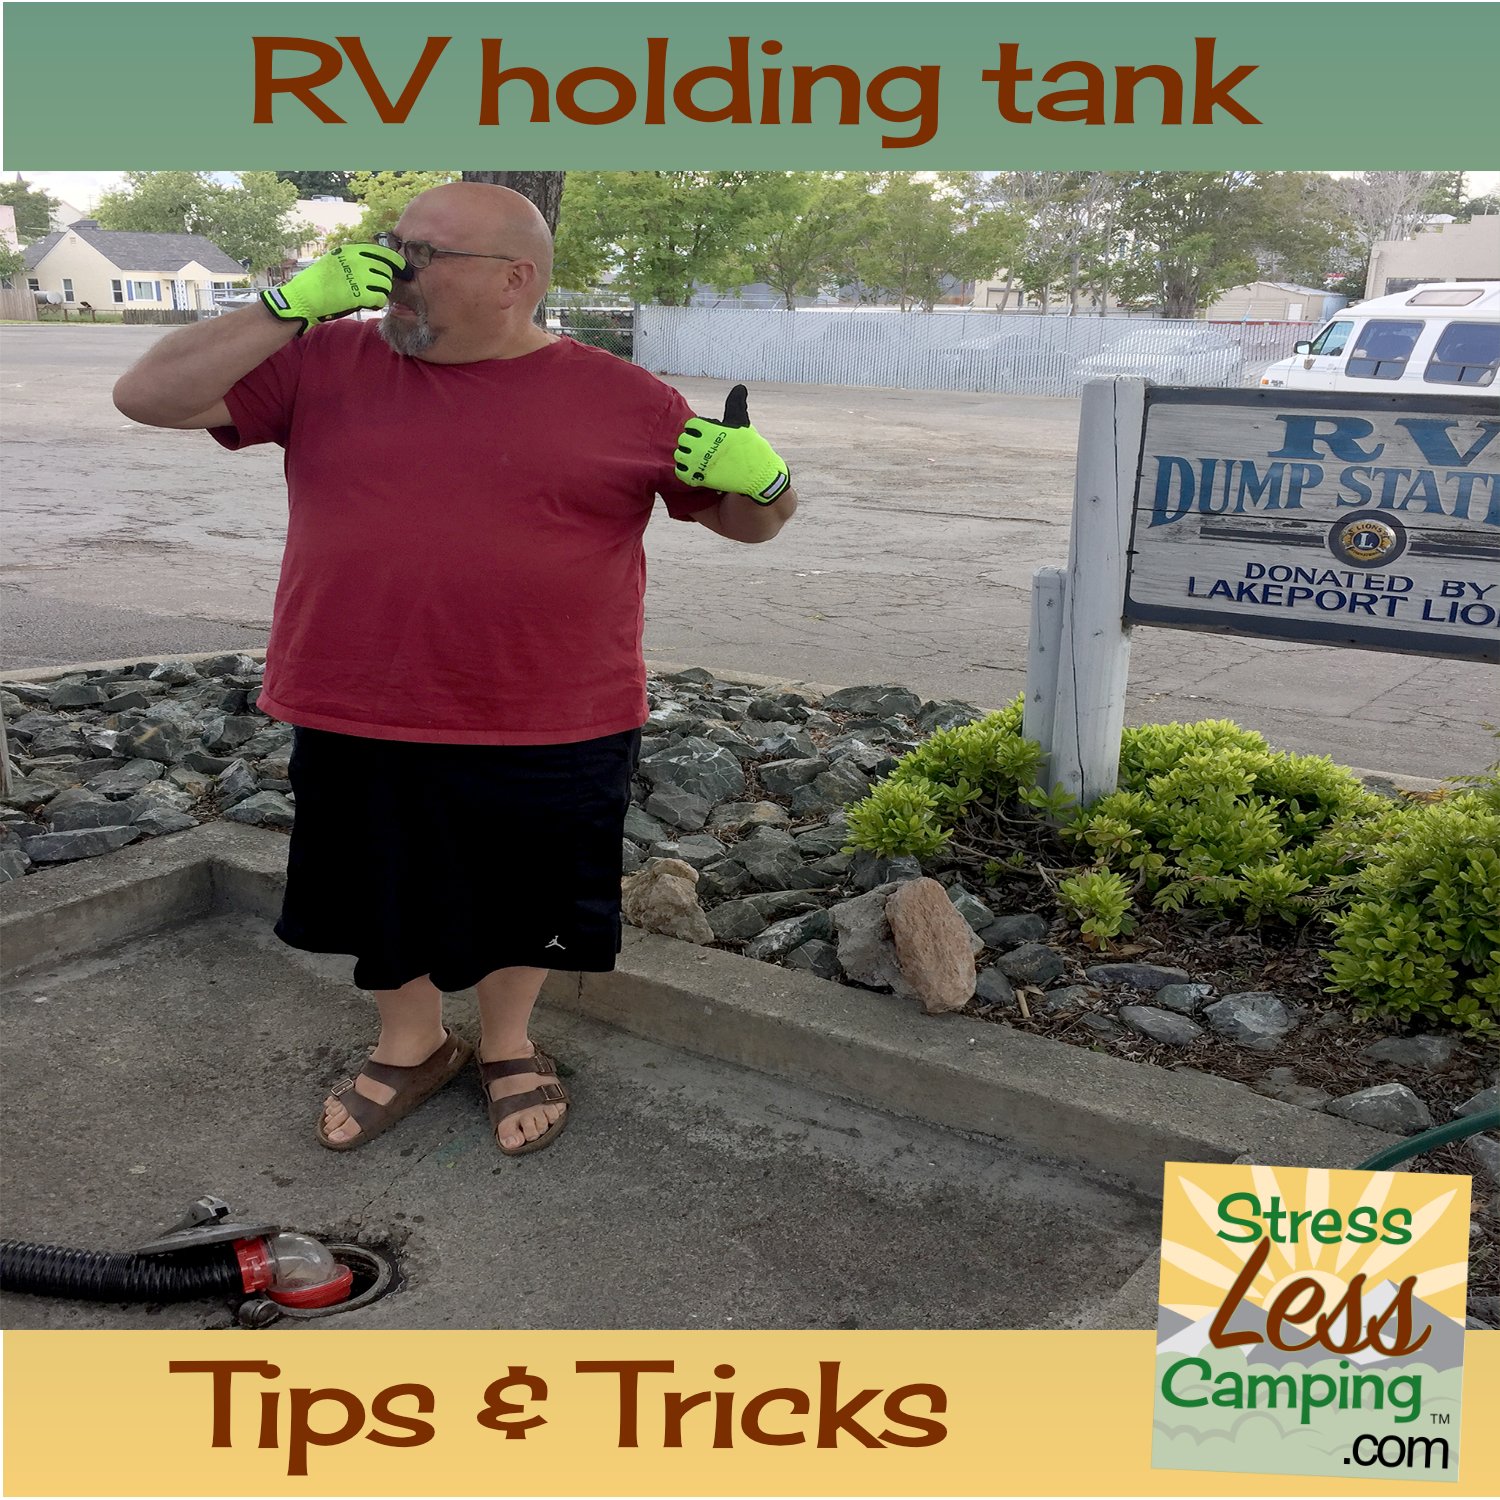 RV tank talk for StressLess Camping